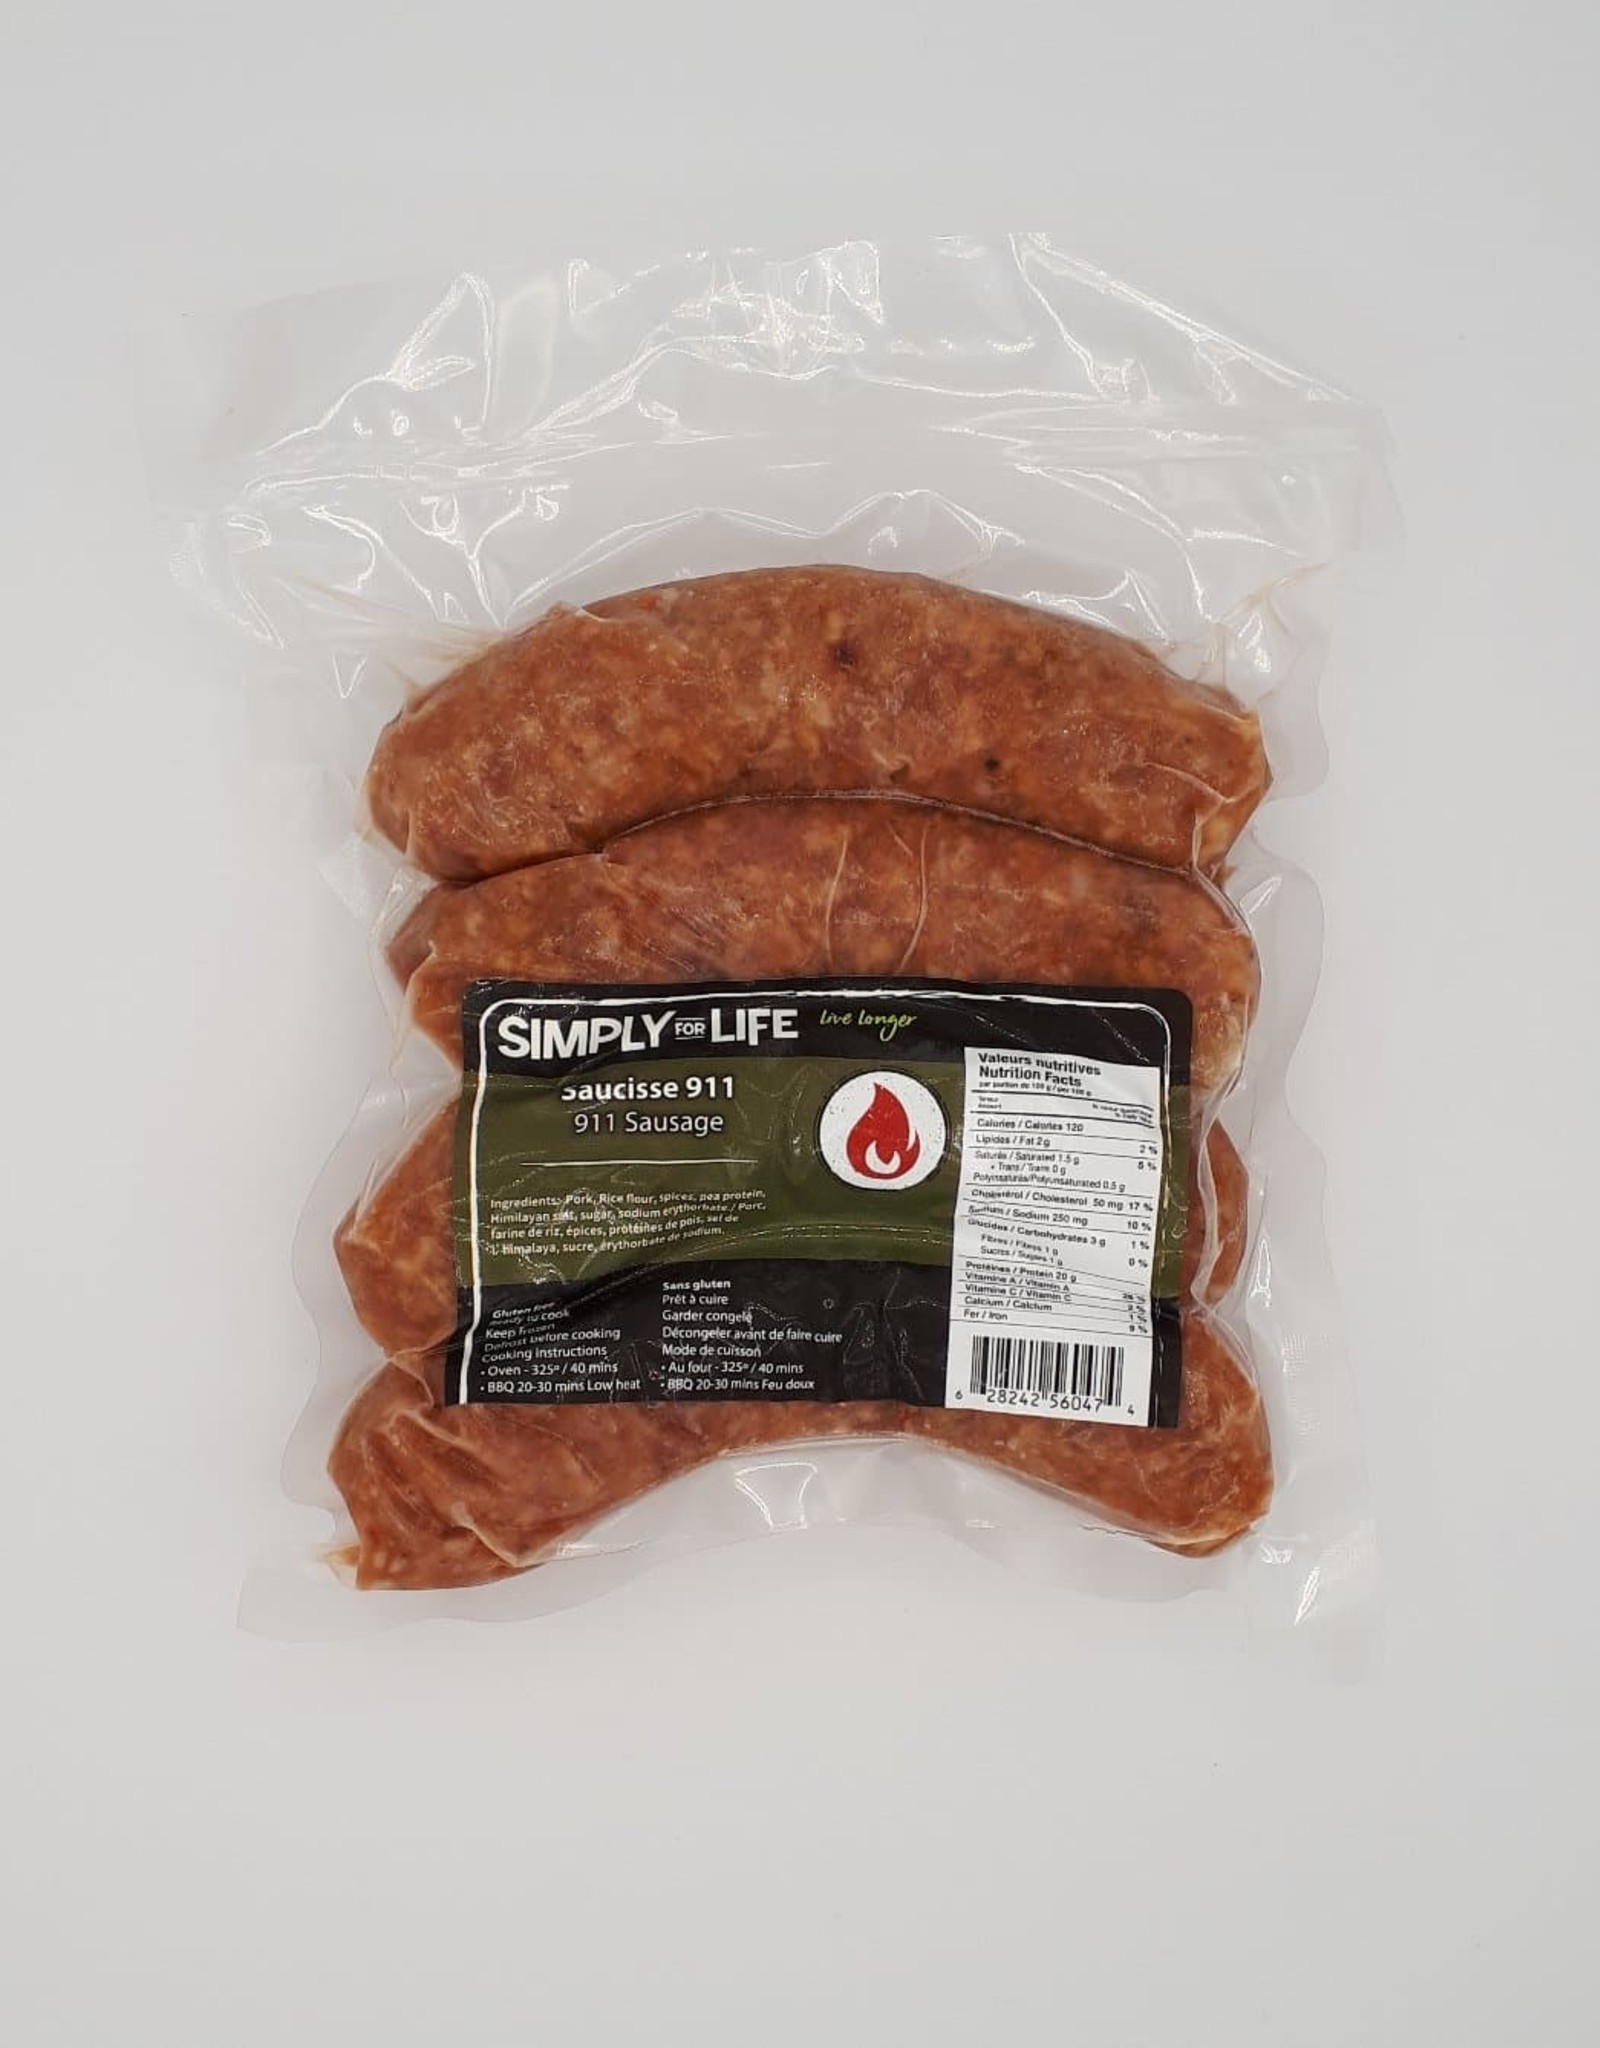 Simply For Life Simply For Life - Saucisses de Porc, 911 (400g)